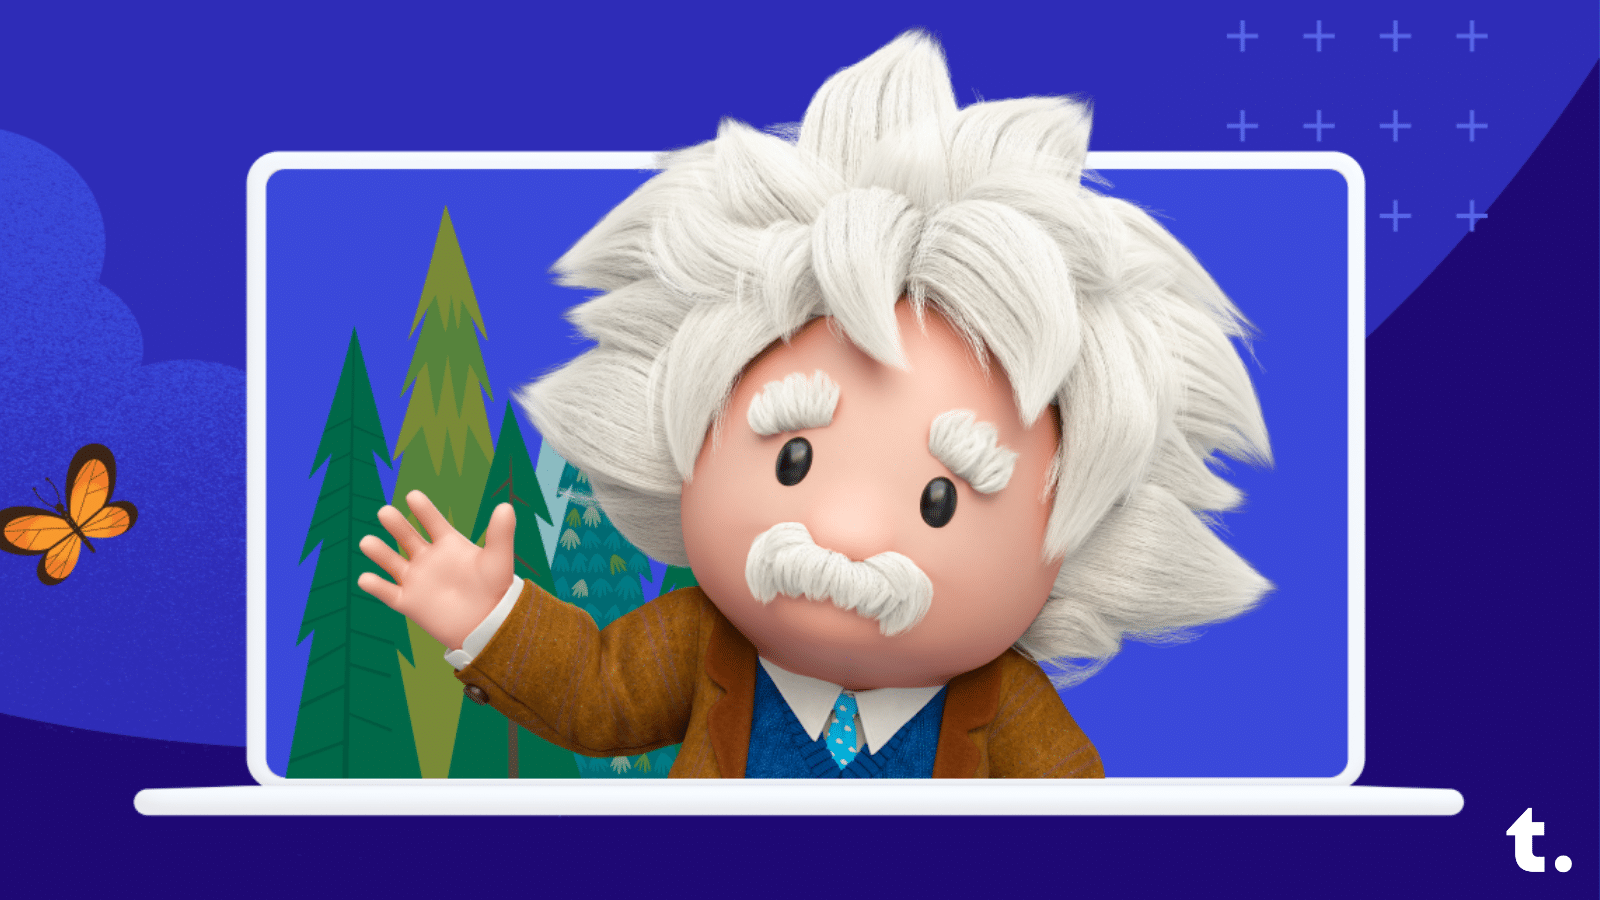 Einstein waving from inside a laptop